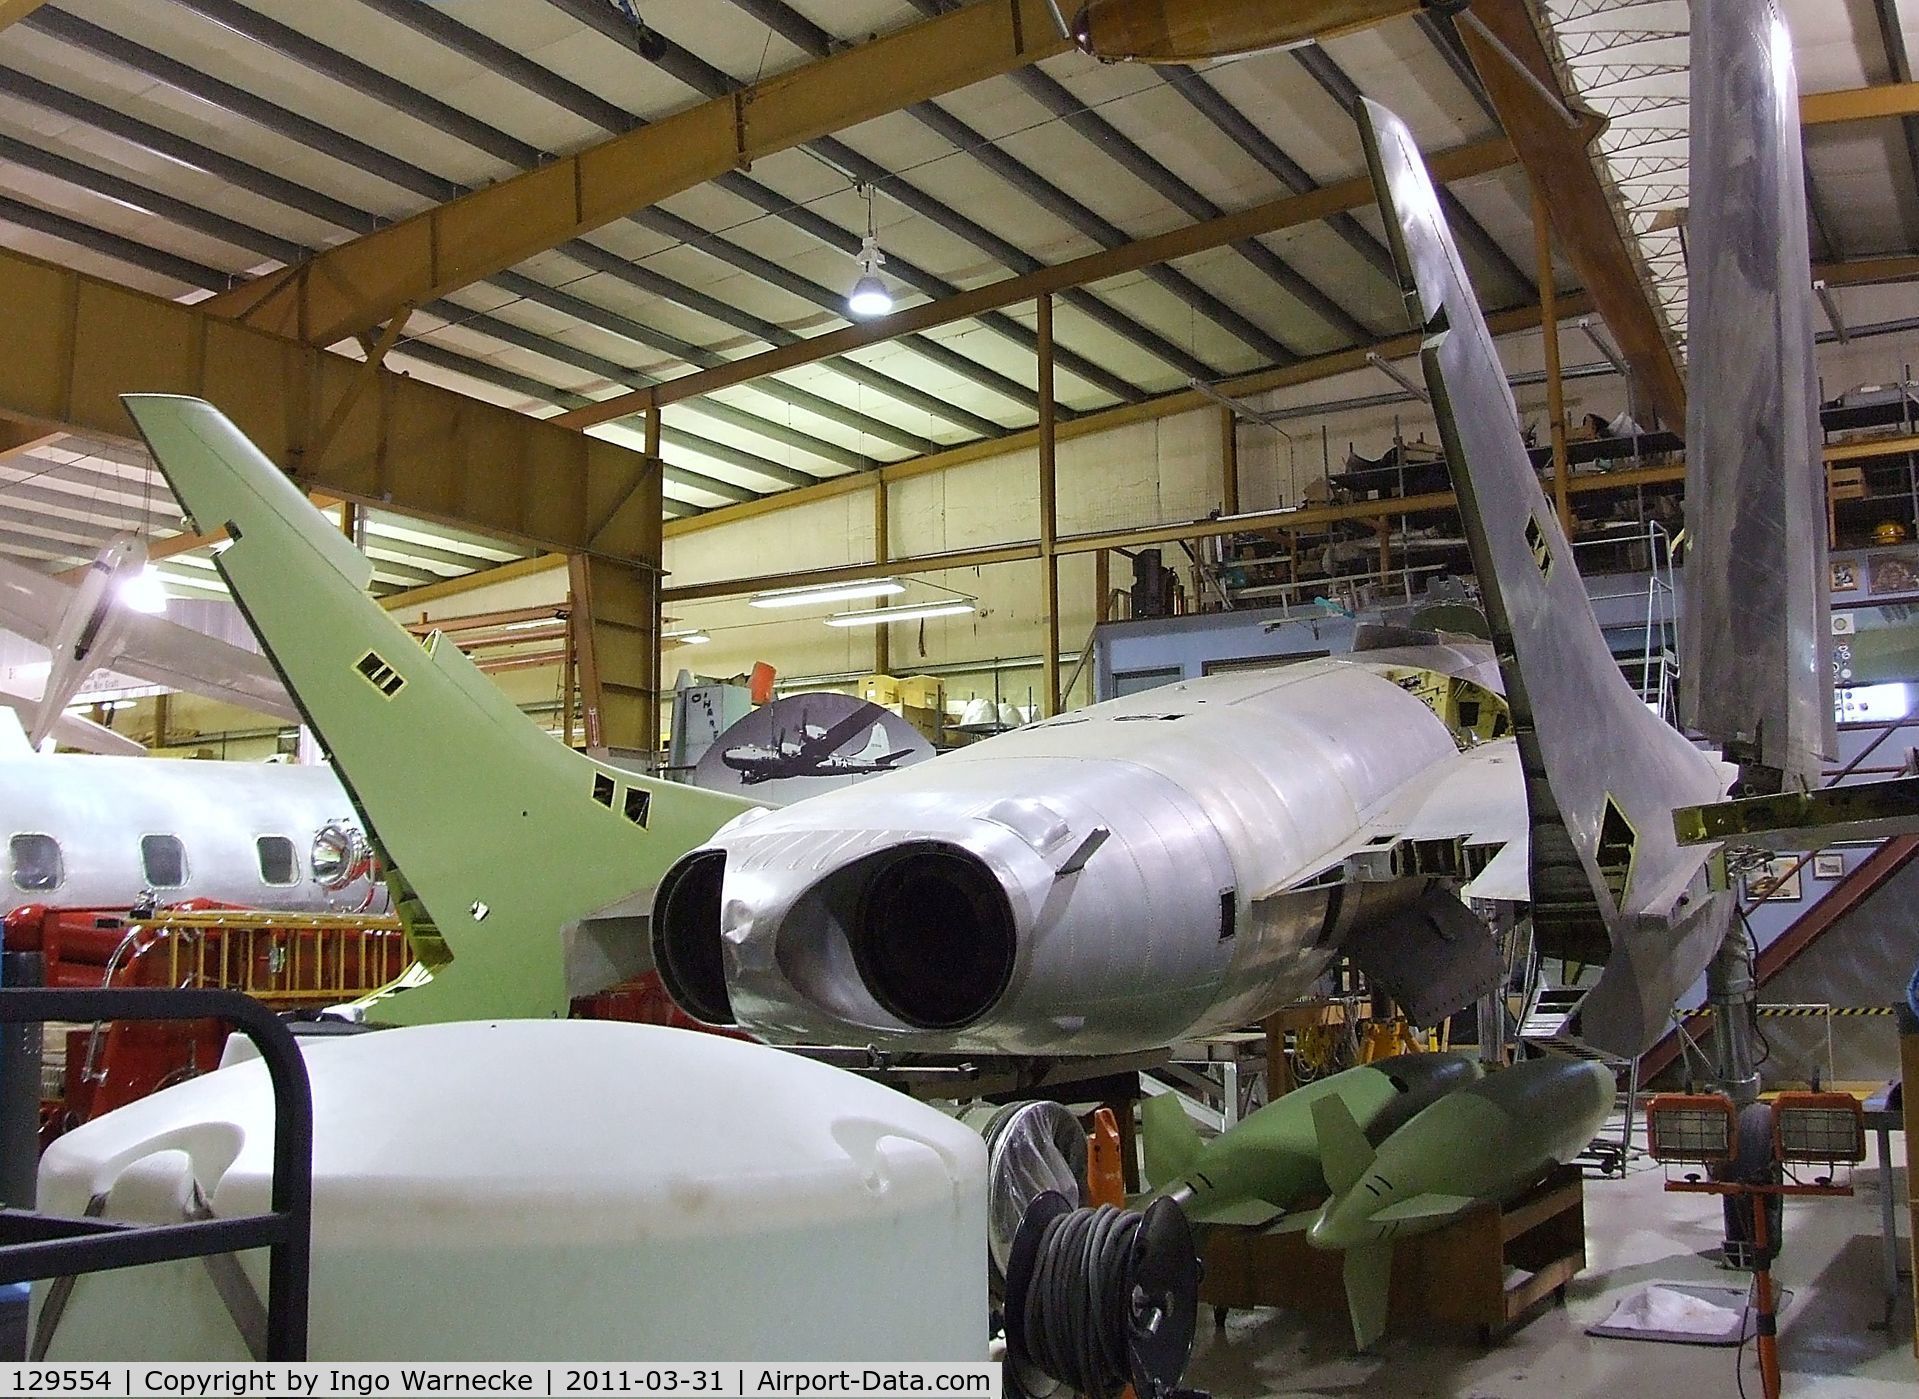 129554, Vought F7U-3 Cutlass C/N 38, Vought F7U-3 Cutlass being restored at the Museum of Flight Restoration Center, Everett WA